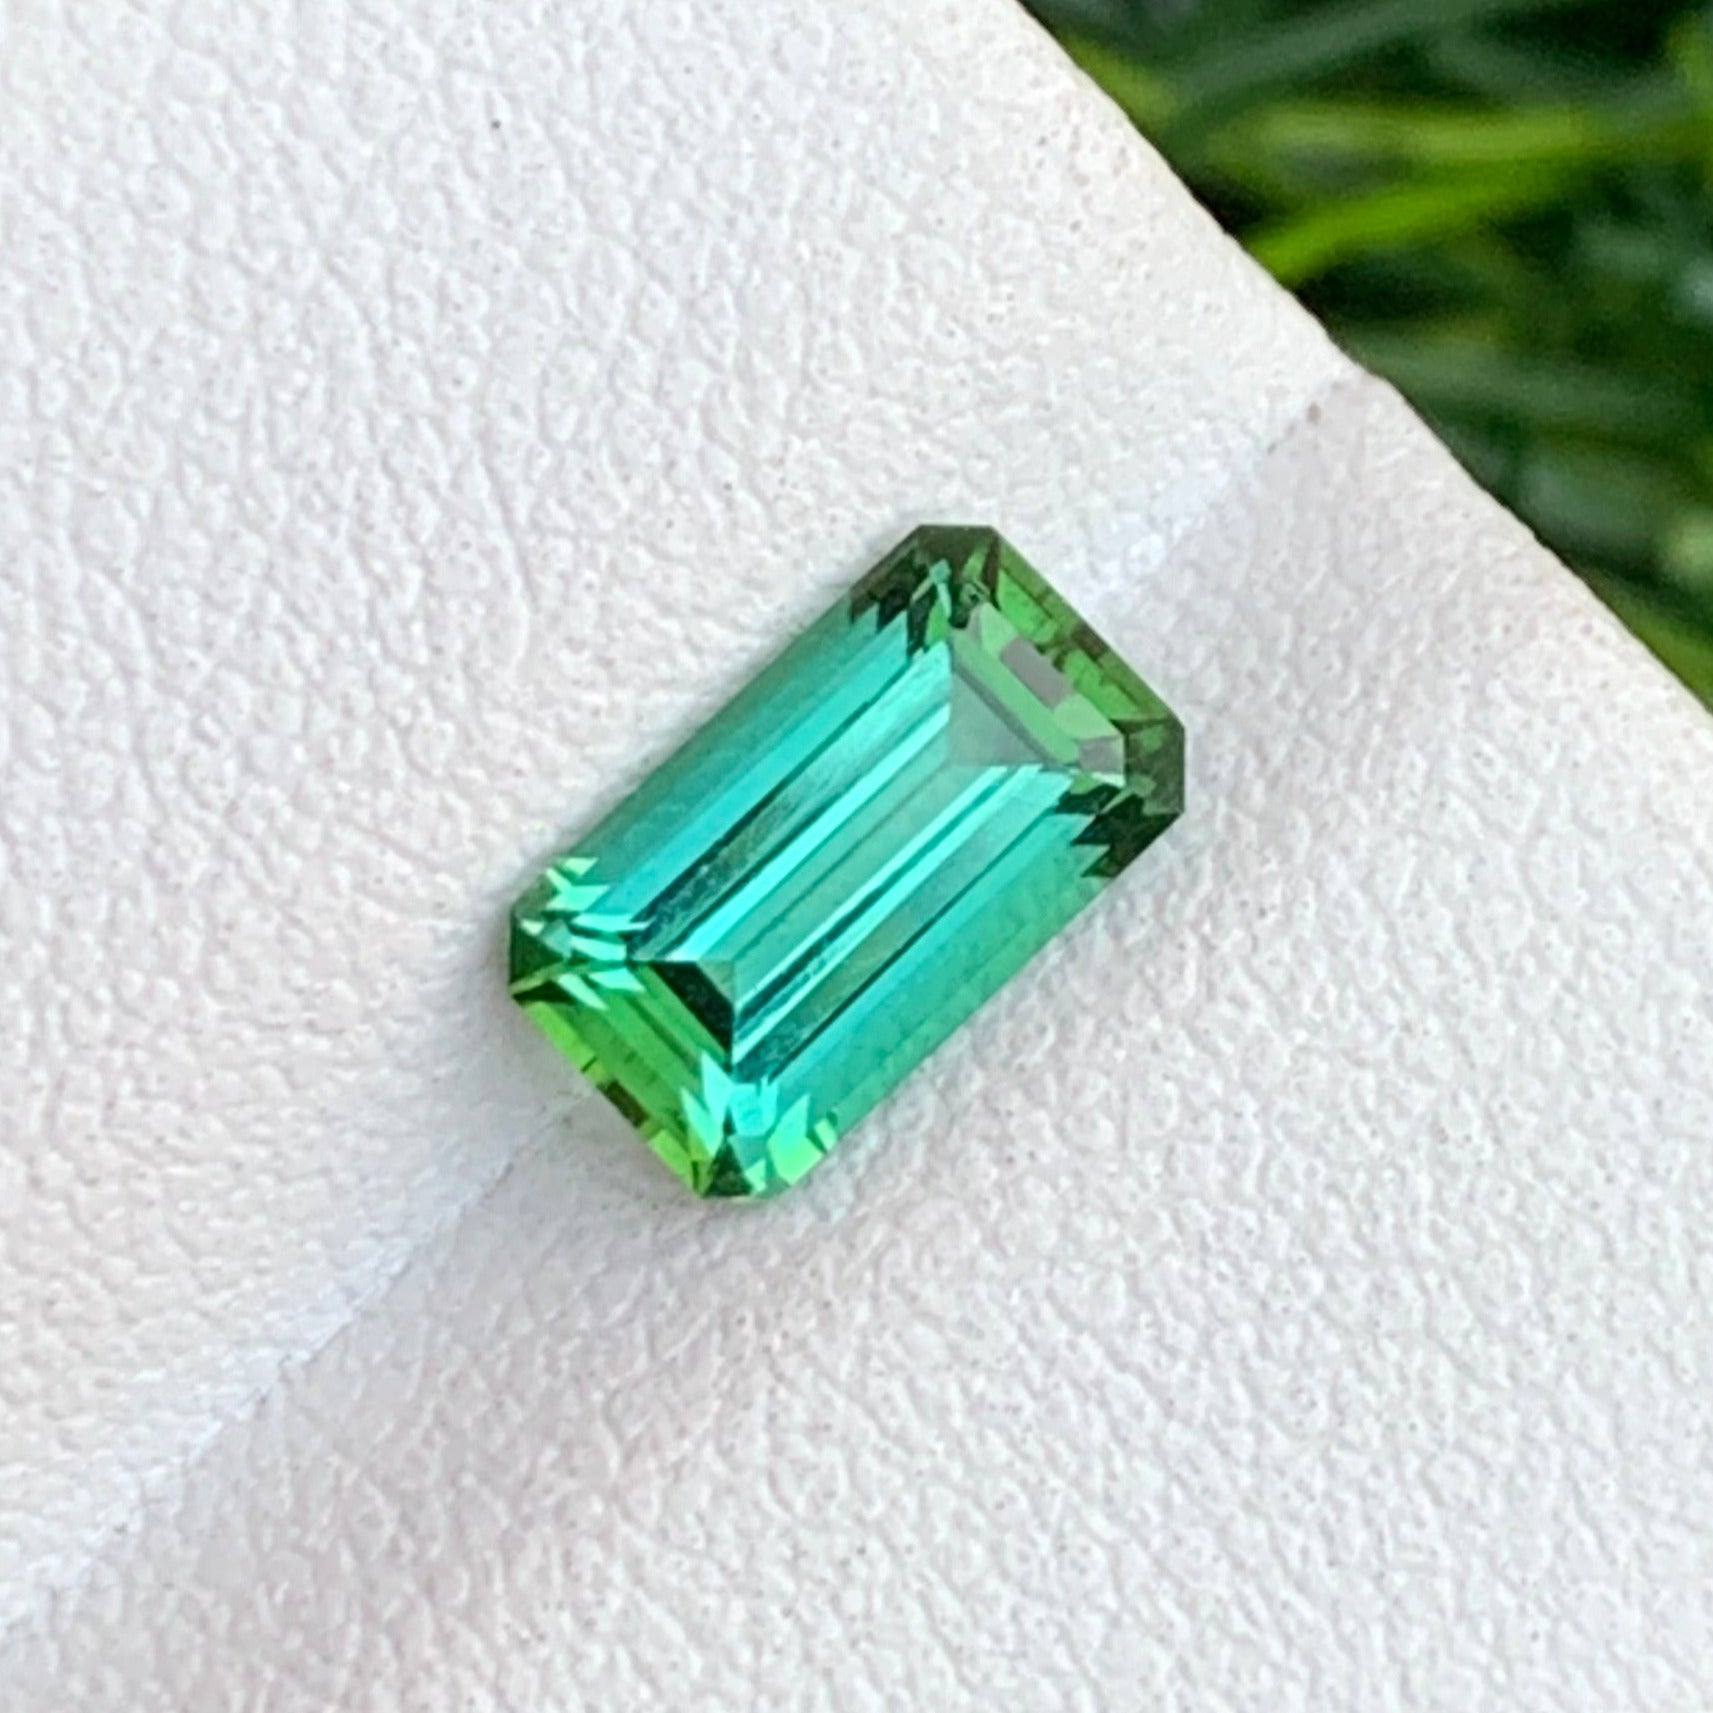 Bluish green gemstone